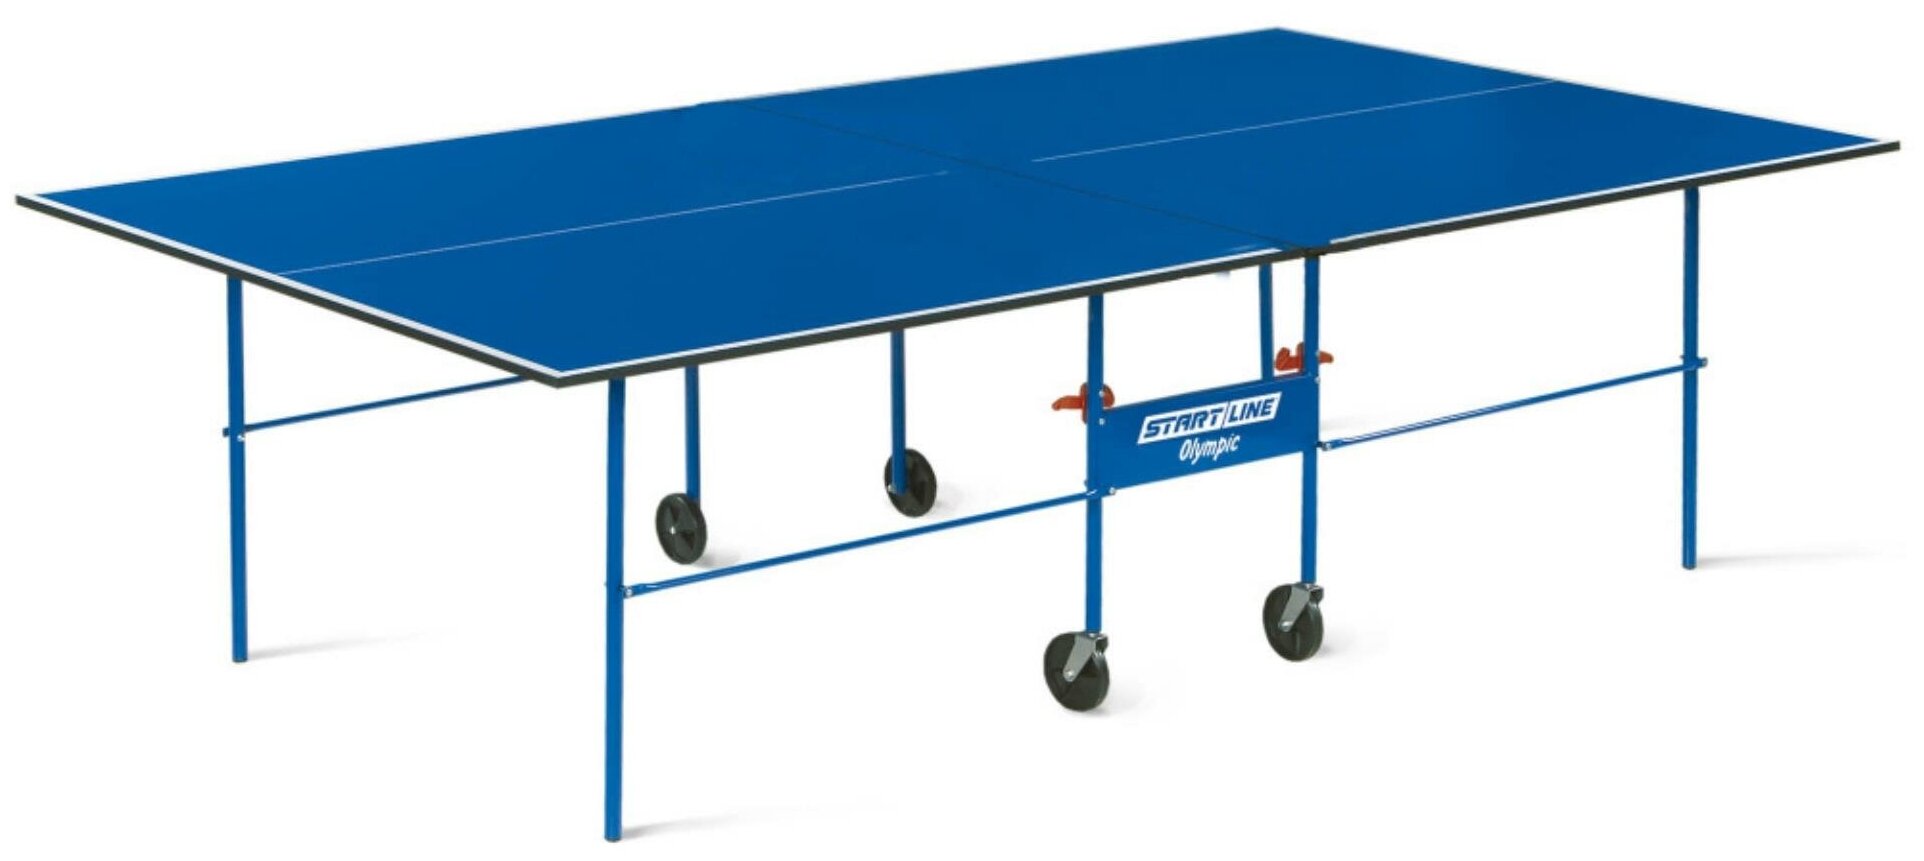 Теннисный стол Start line Olympic BLUE с комплектом аксессуаров, с сеткой, с влагостойким чехлом